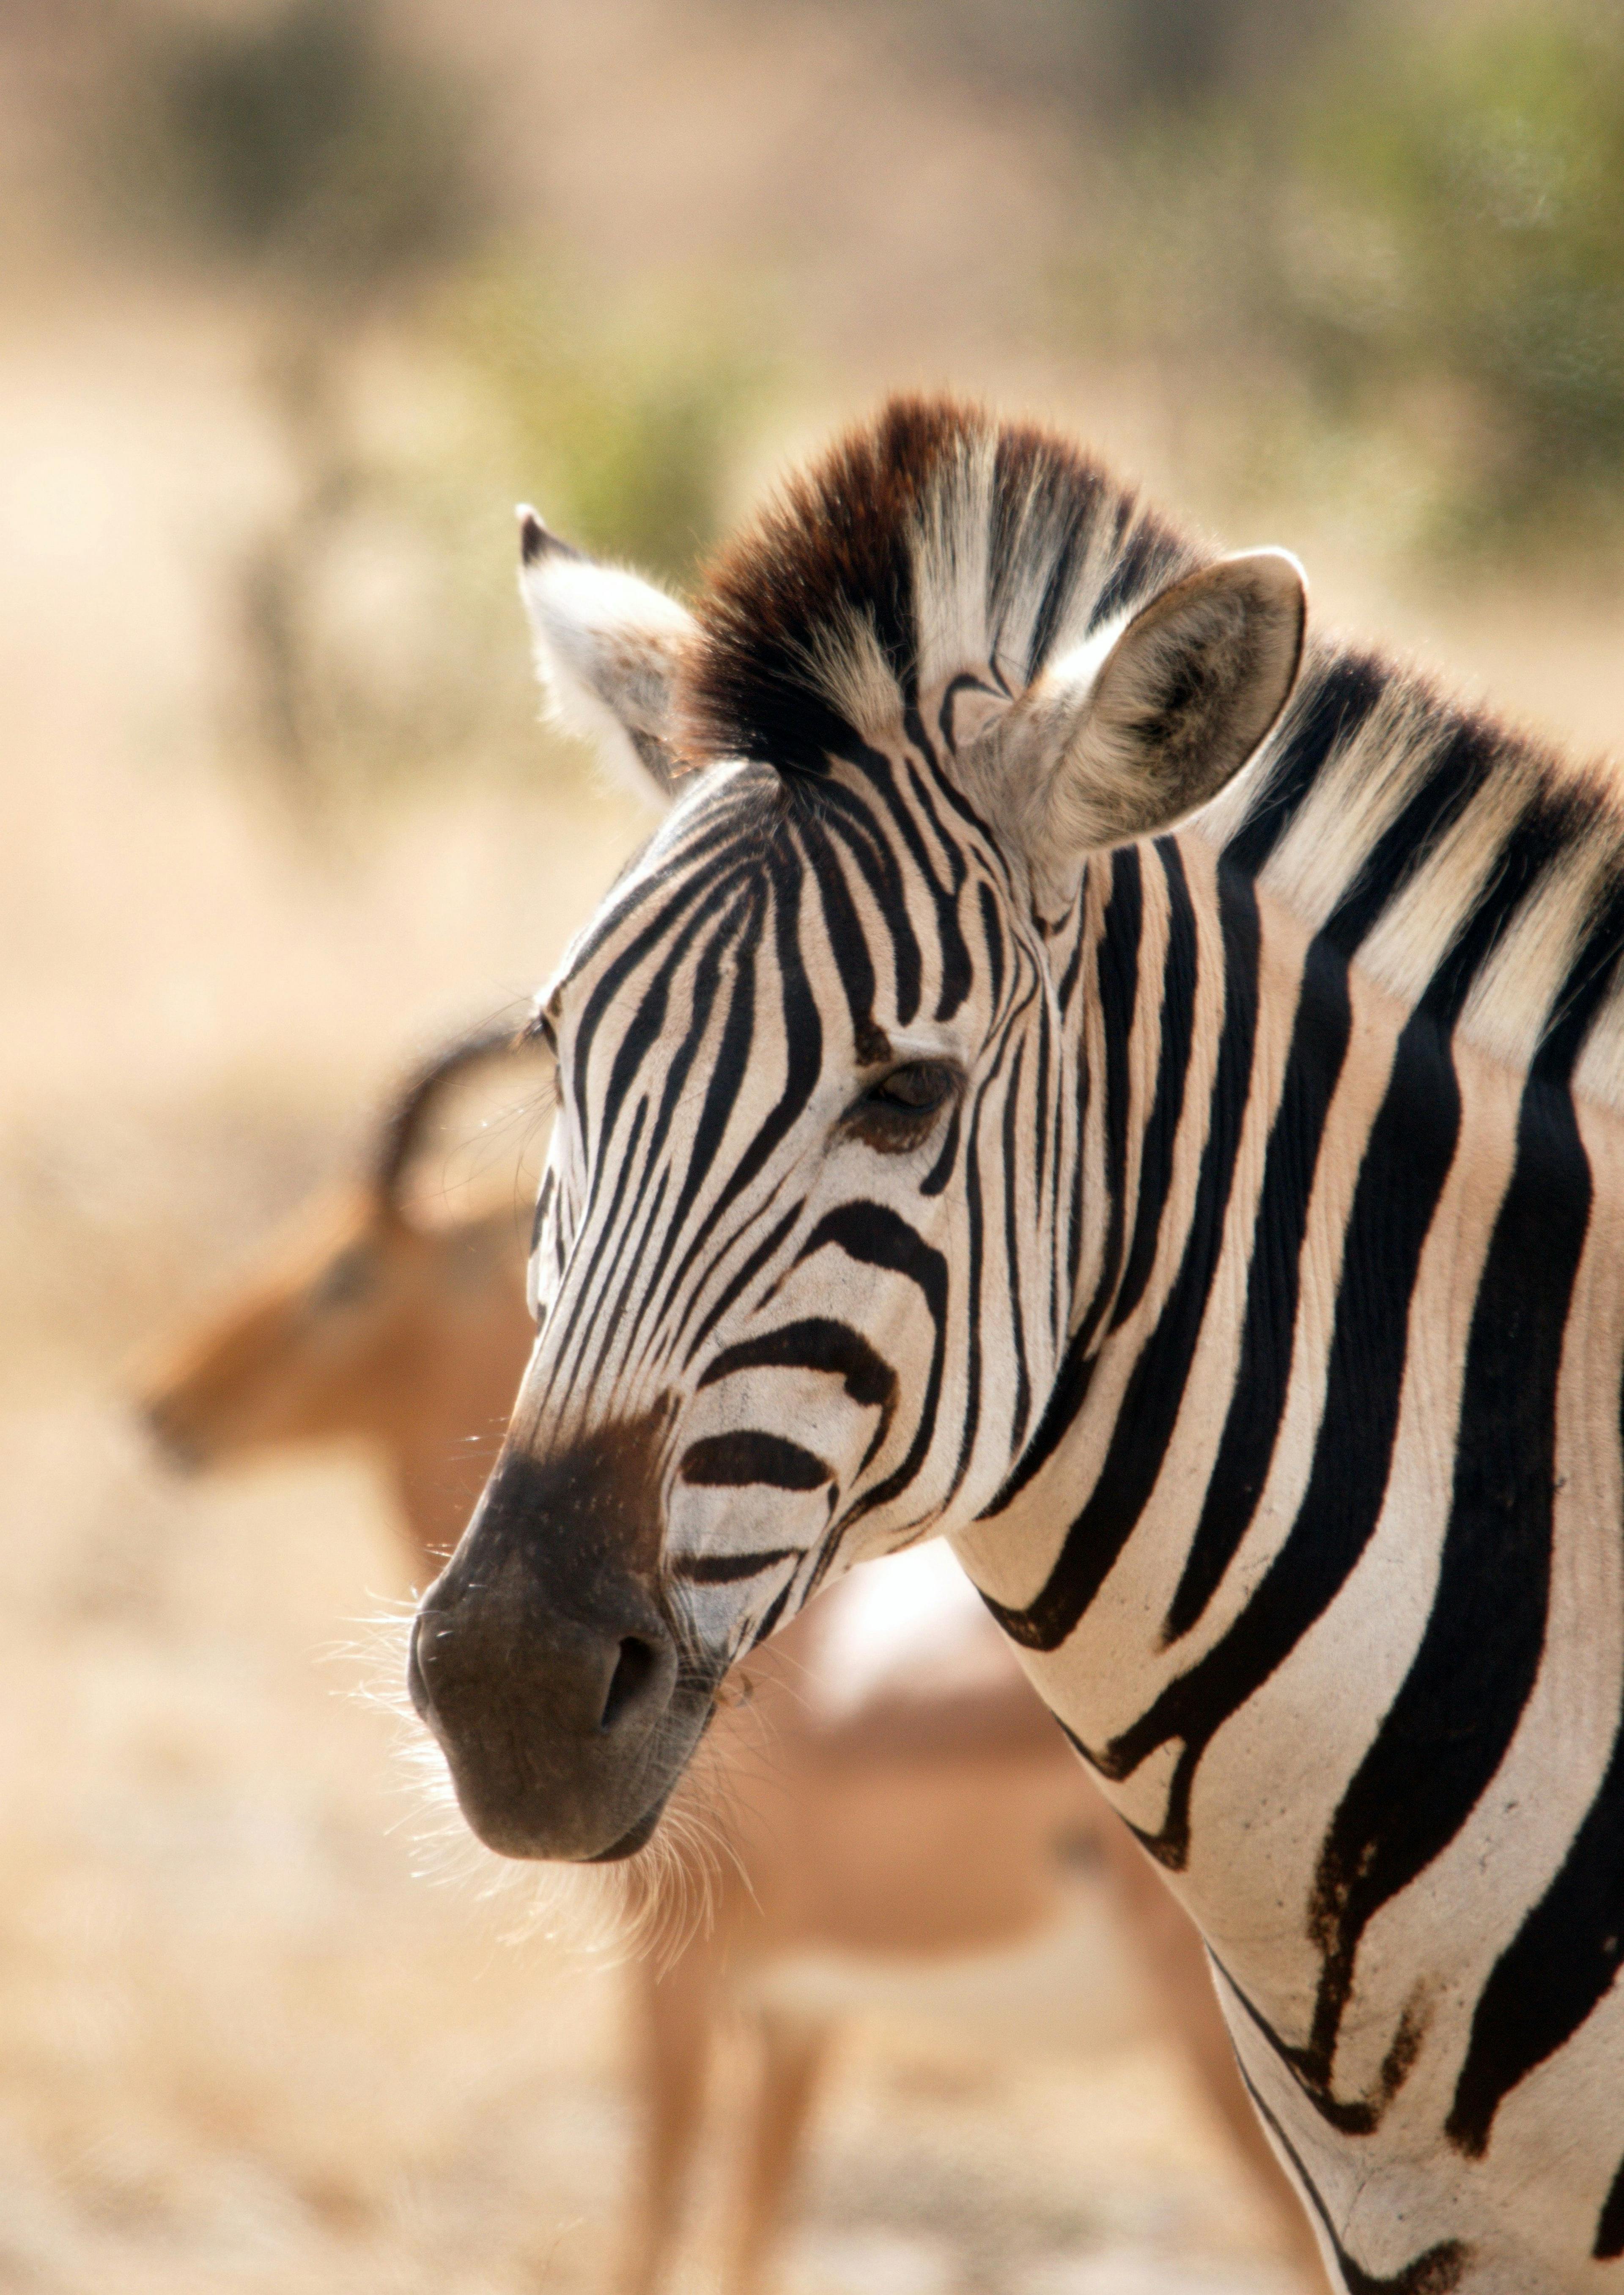 Zebra in Kruger National Park in South Africa.